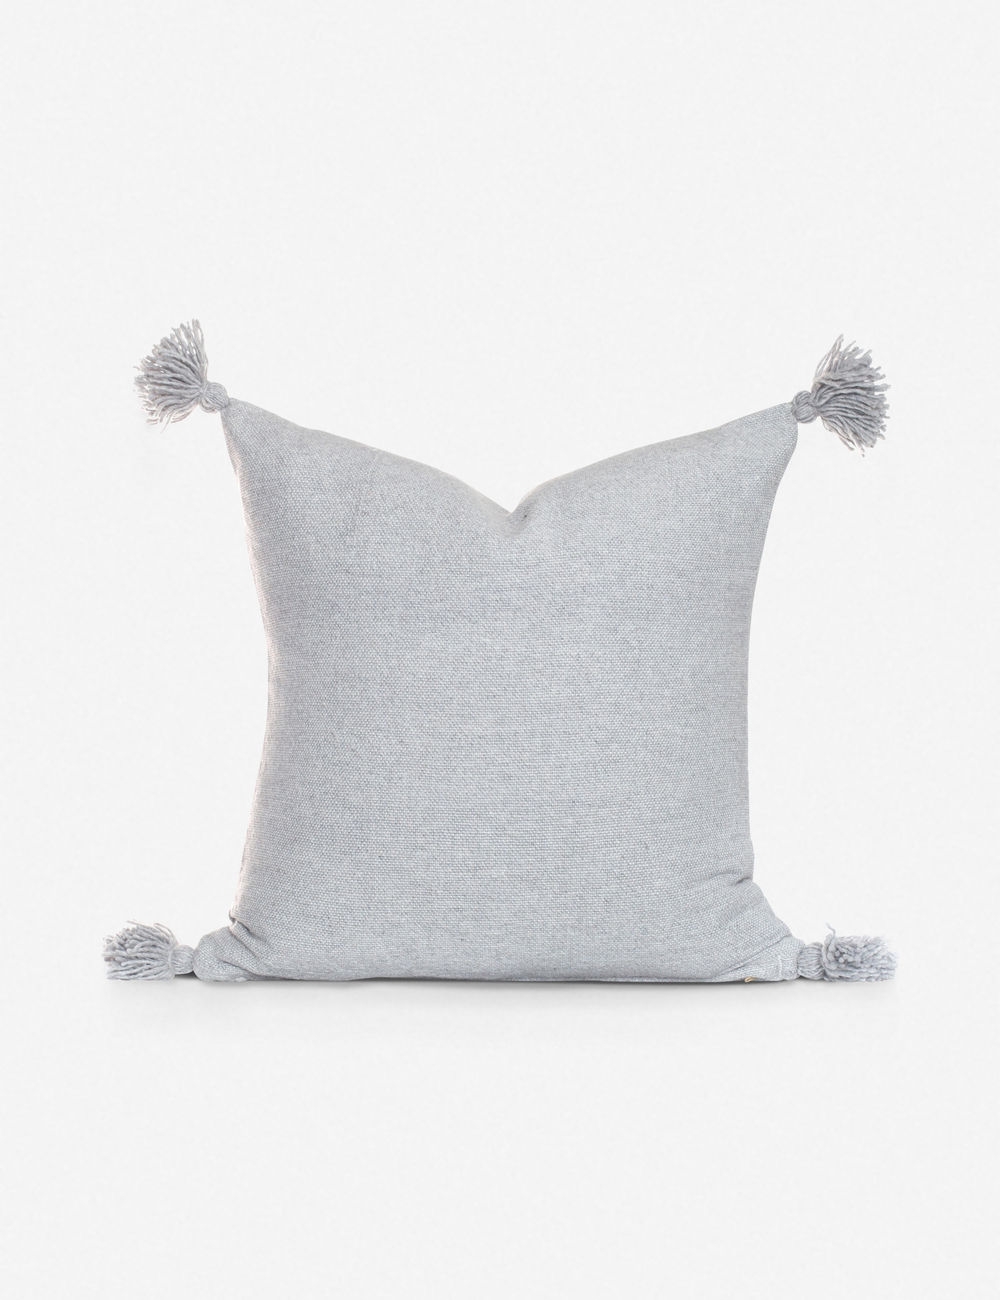 Sami pillow gray - Image 0